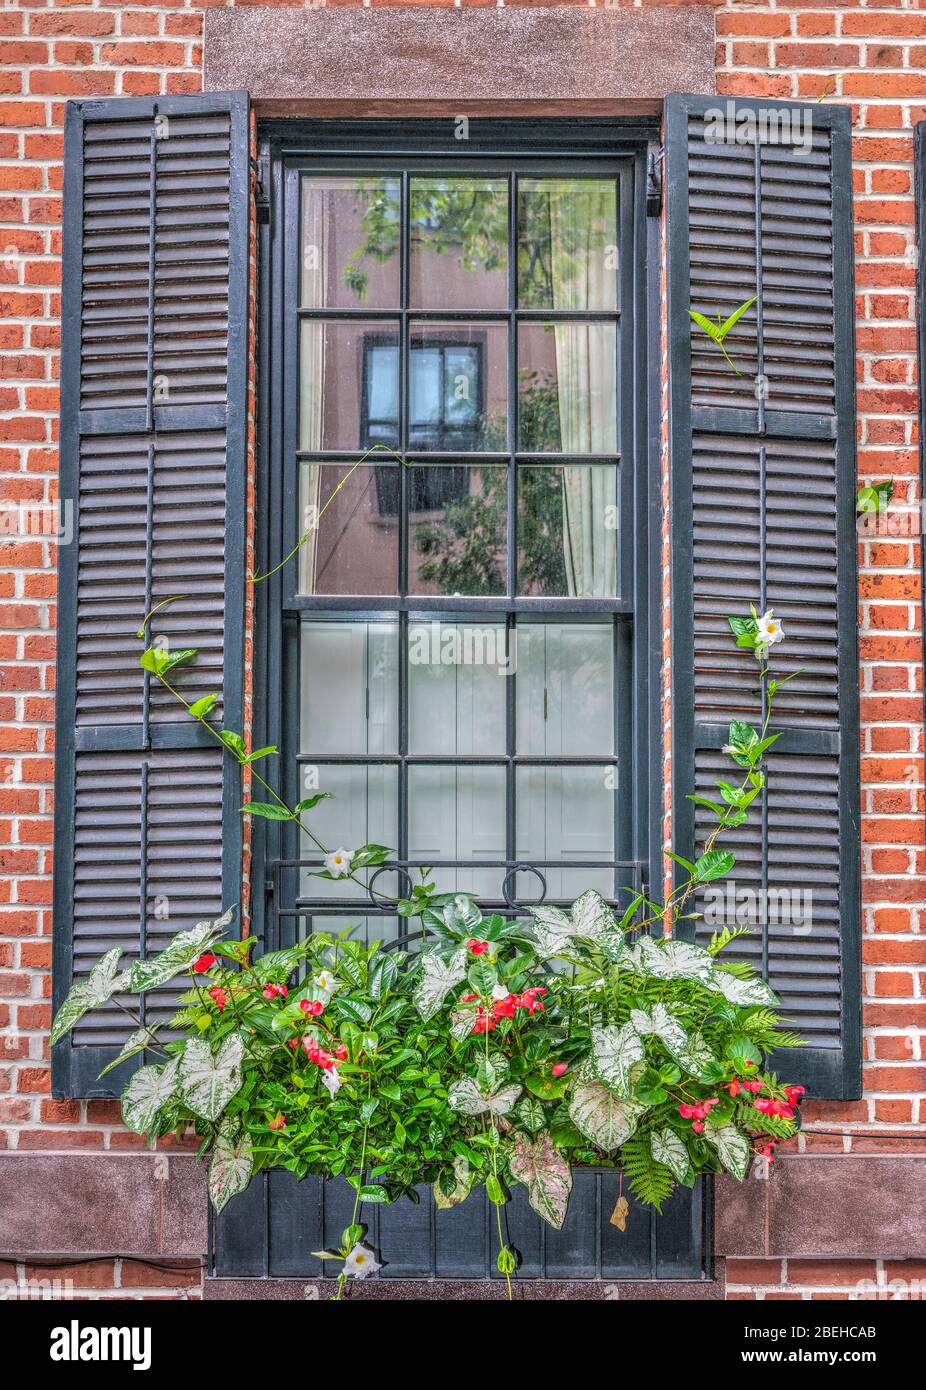 Grande finestra in una città con persiane blu/grigie e una finestra con fiori e piante vibranti. C'è un riflesso nella finestra di un'altra finestra. Foto Stock